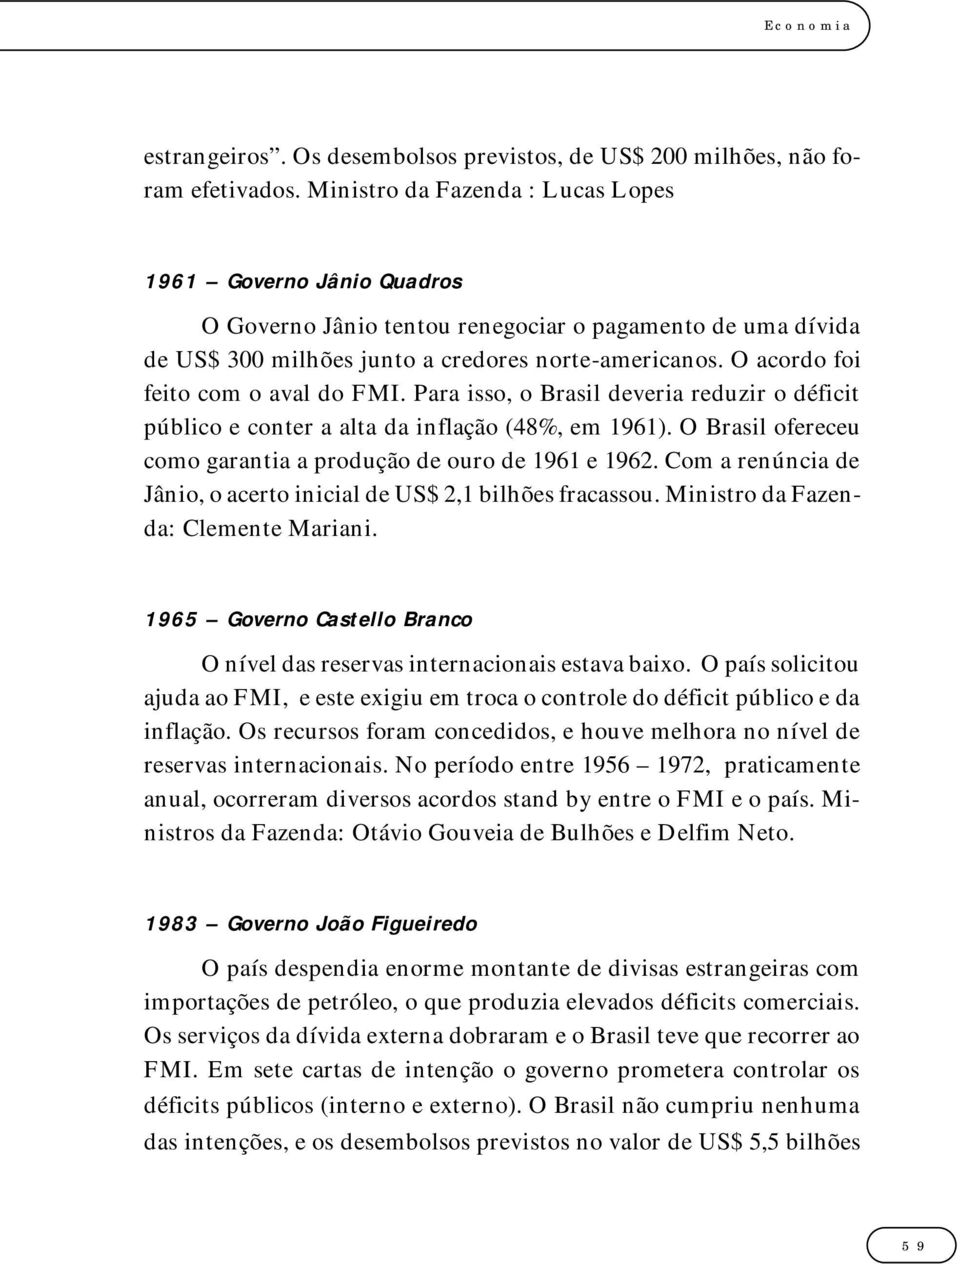 O acordo foi feito com o aval do FMI. Para isso, o Brasil deveria reduzir o déficit público e conter a alta da inflação (48%, em 1961).